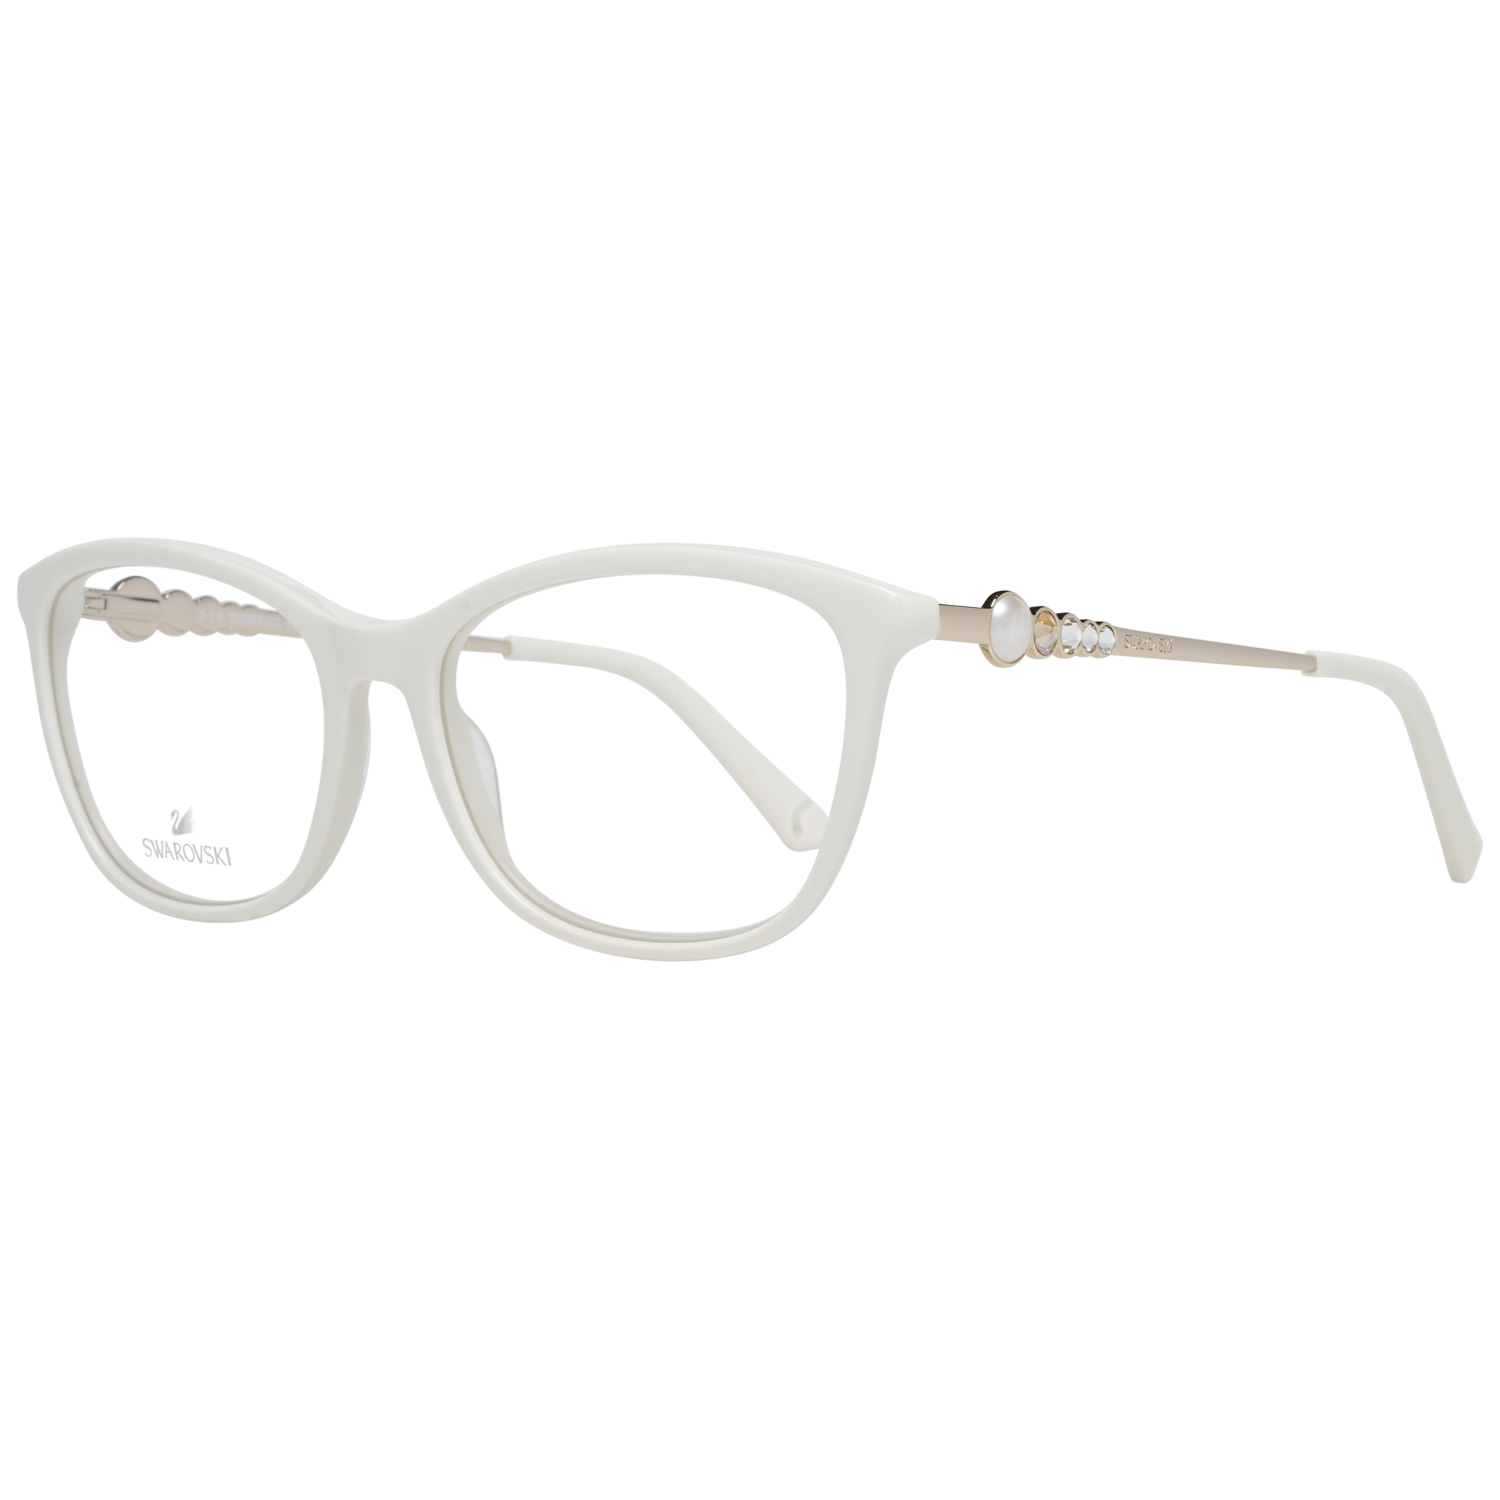 Swarovski Frames Swarovski Women Glasses Optical Frame SK5276 021 54 Eyeglasses Eyewear UK USA Australia 